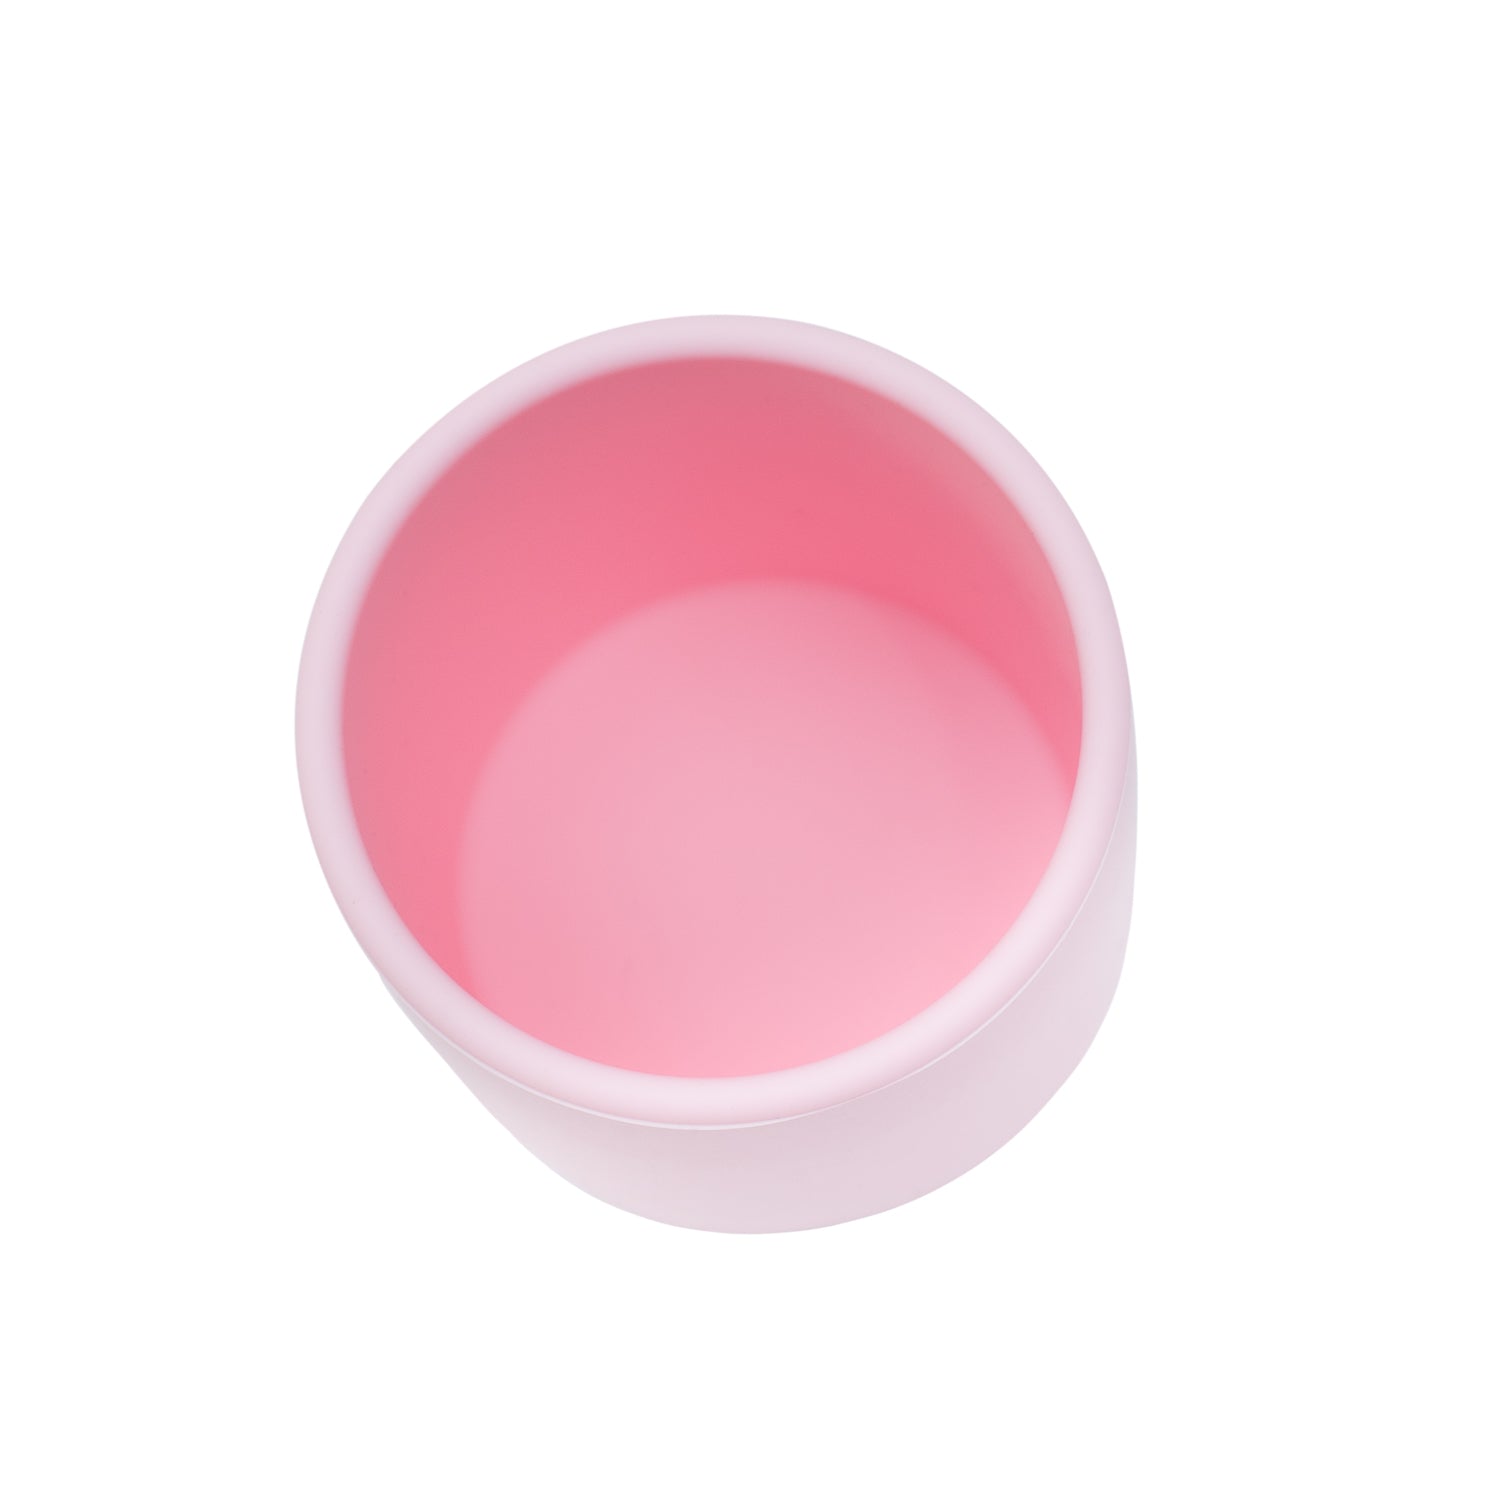 Powder Pink Grip cup